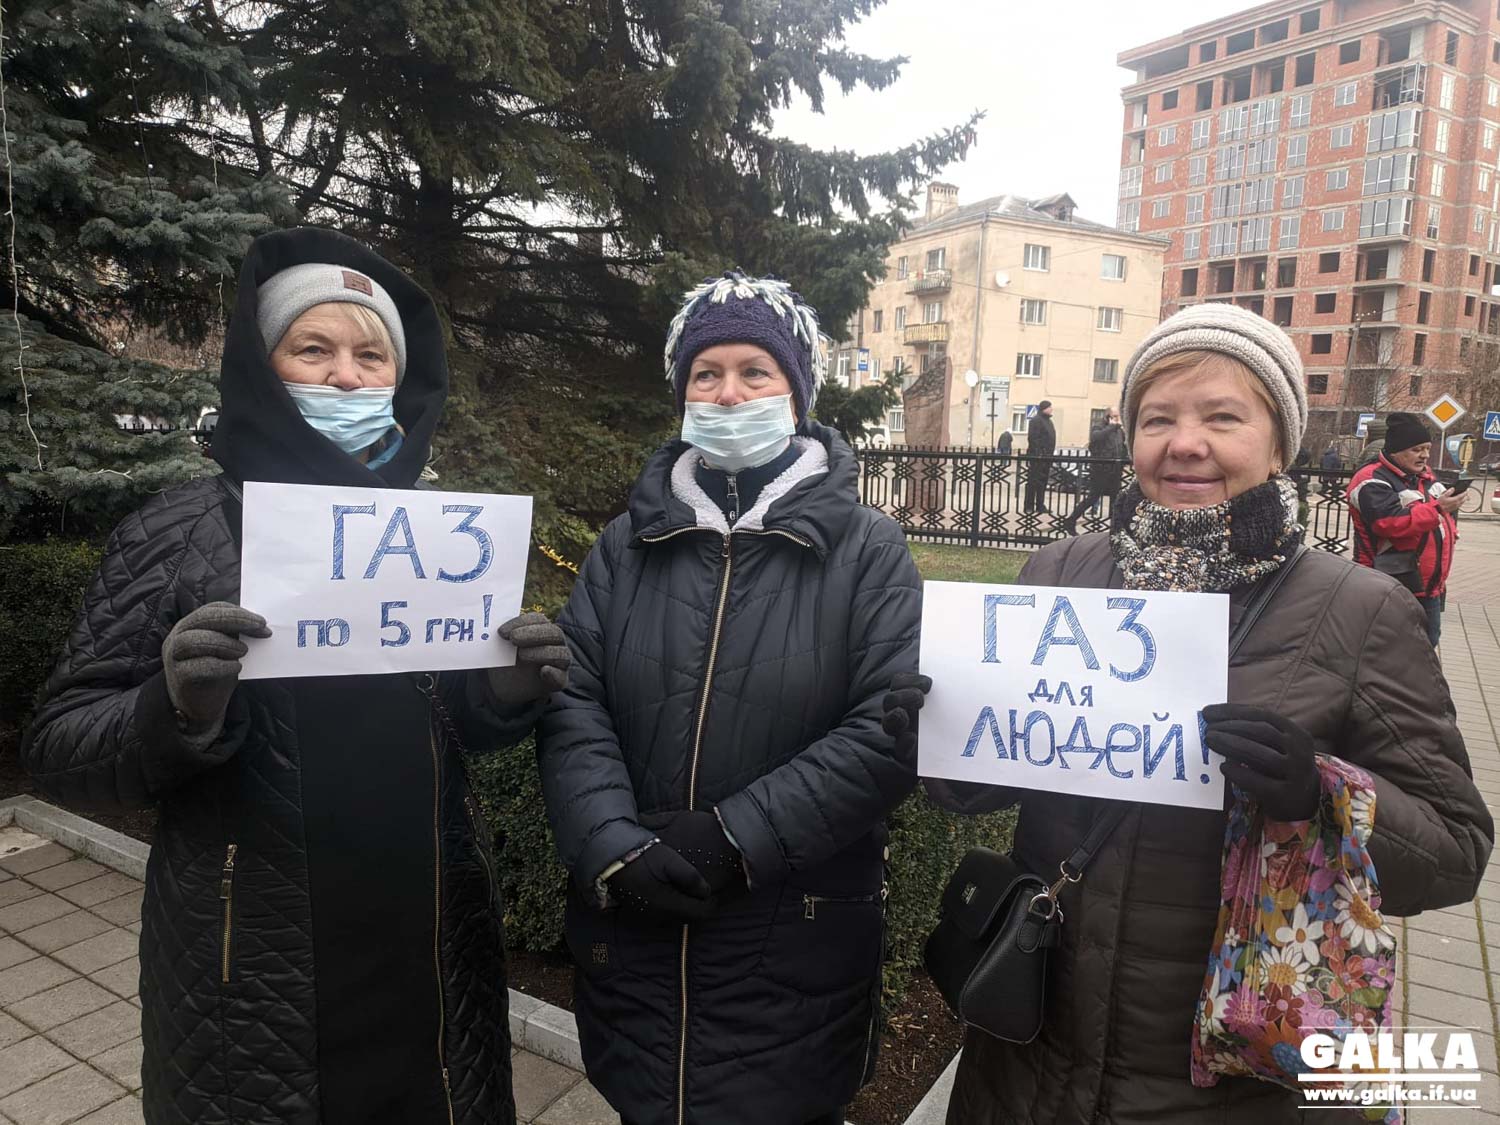 “Газ для людей”: в Івано-Франківську протестують проти росту тарифів (ФОТО, LIVE трансляція)